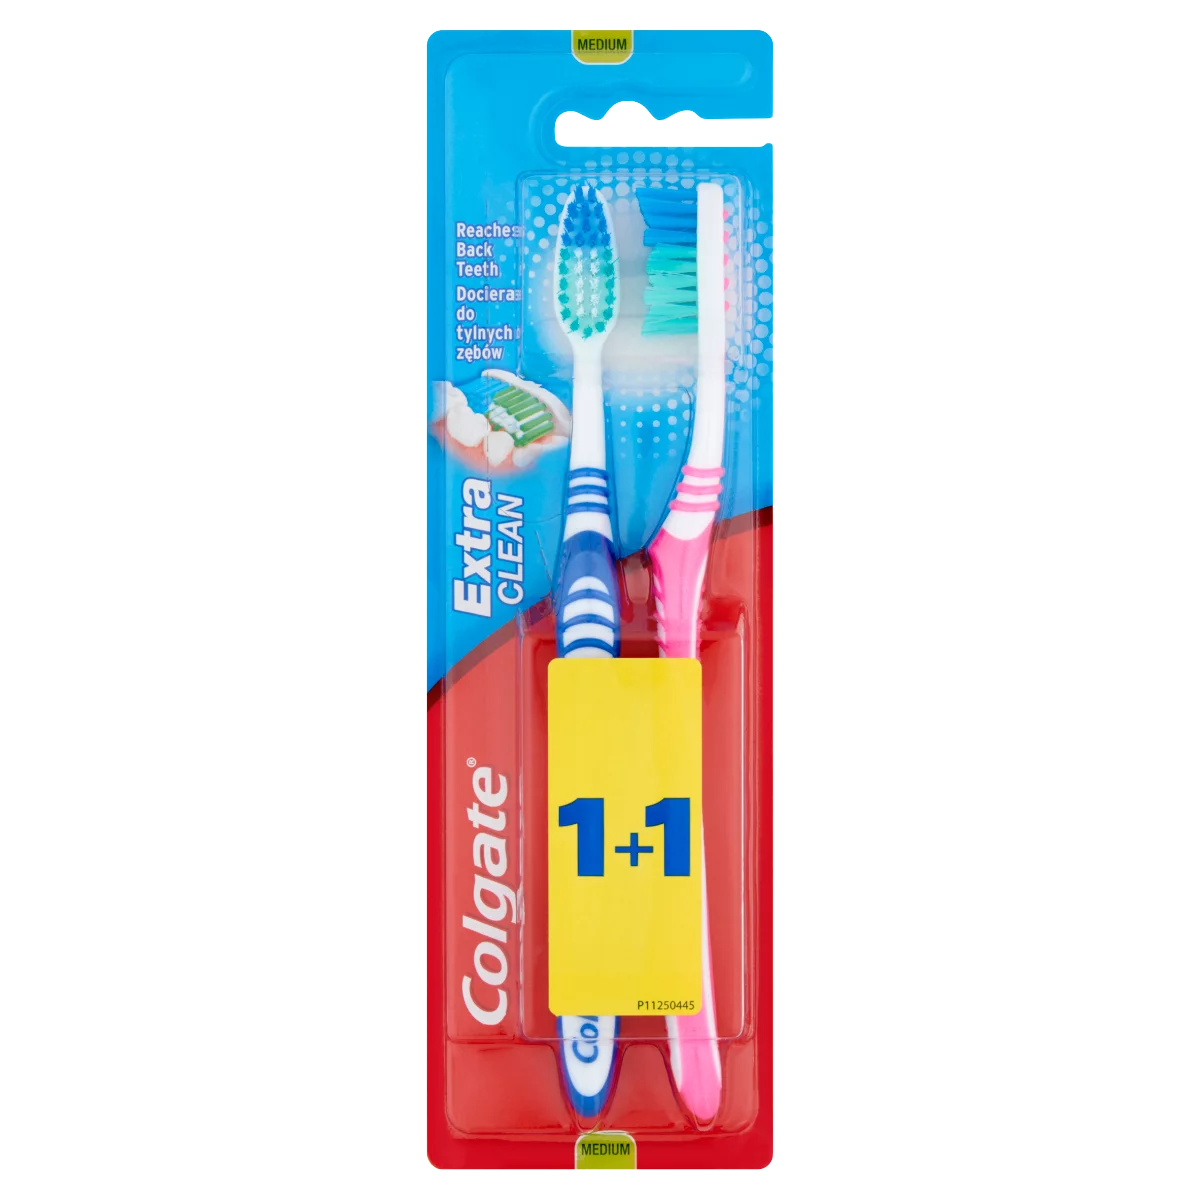 Colgate Extra Clean közepes sörtéjű fogkefe 2 db